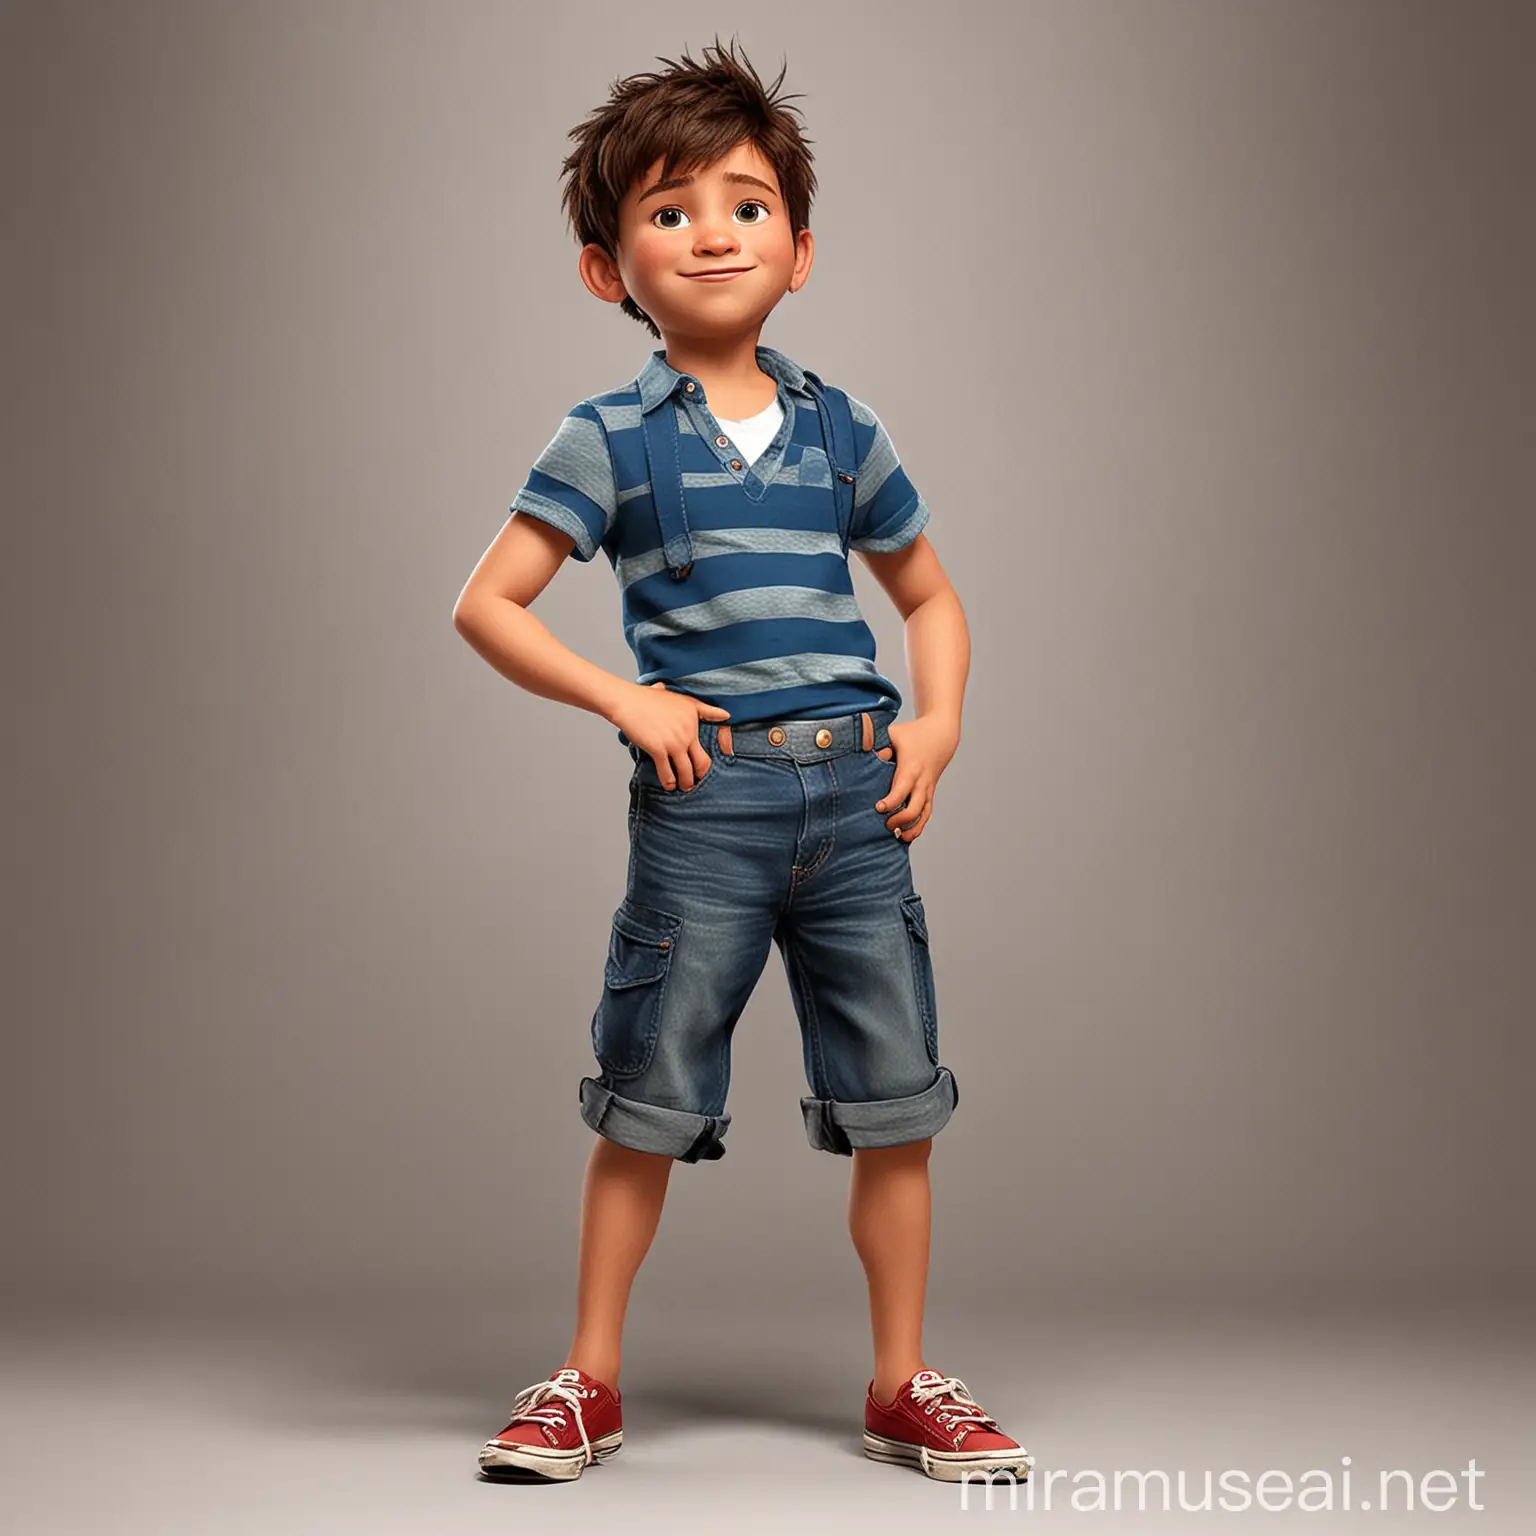 Disney Pixar ,Niño de 11 años , usando ropa que le queda pequeña